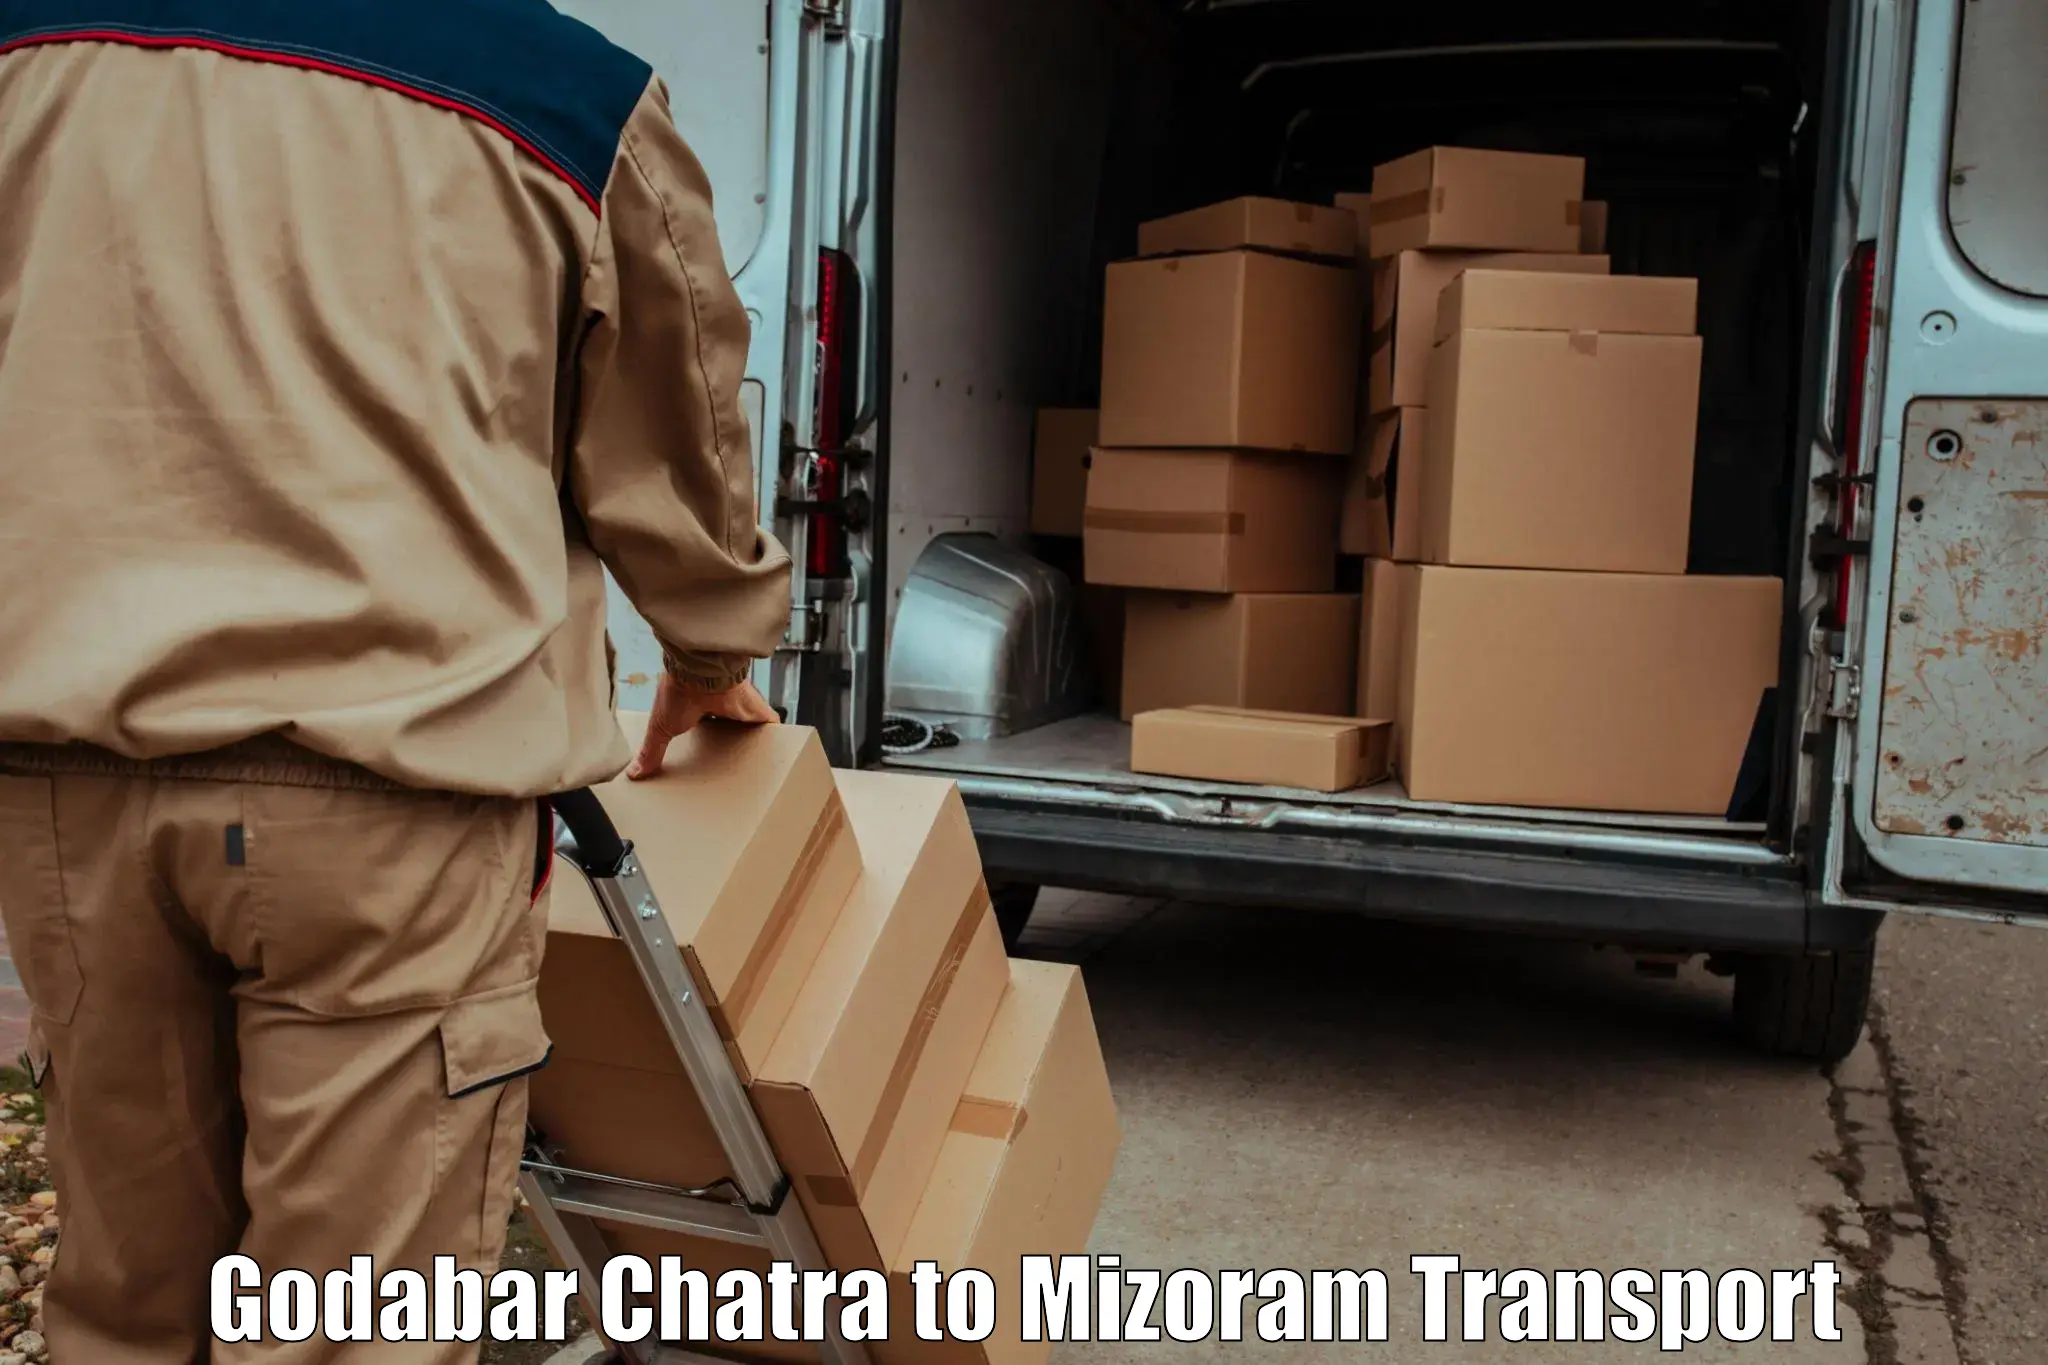 Road transport services Godabar Chatra to Siaha